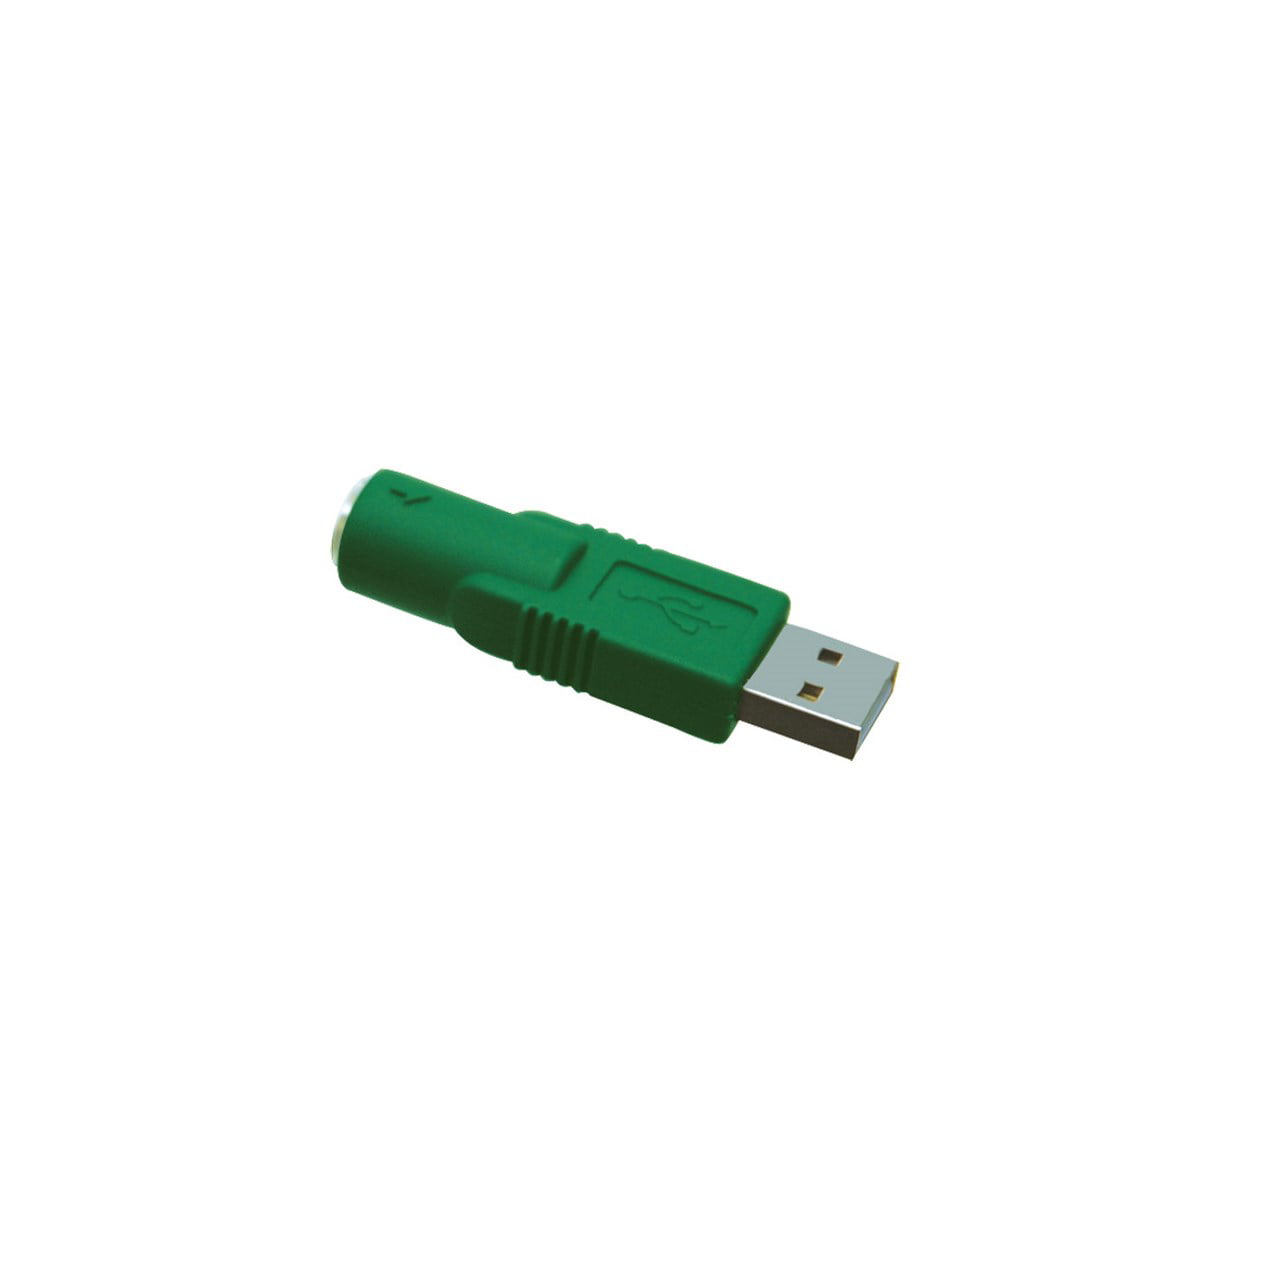 PS2 USB Adapter Walmart.com